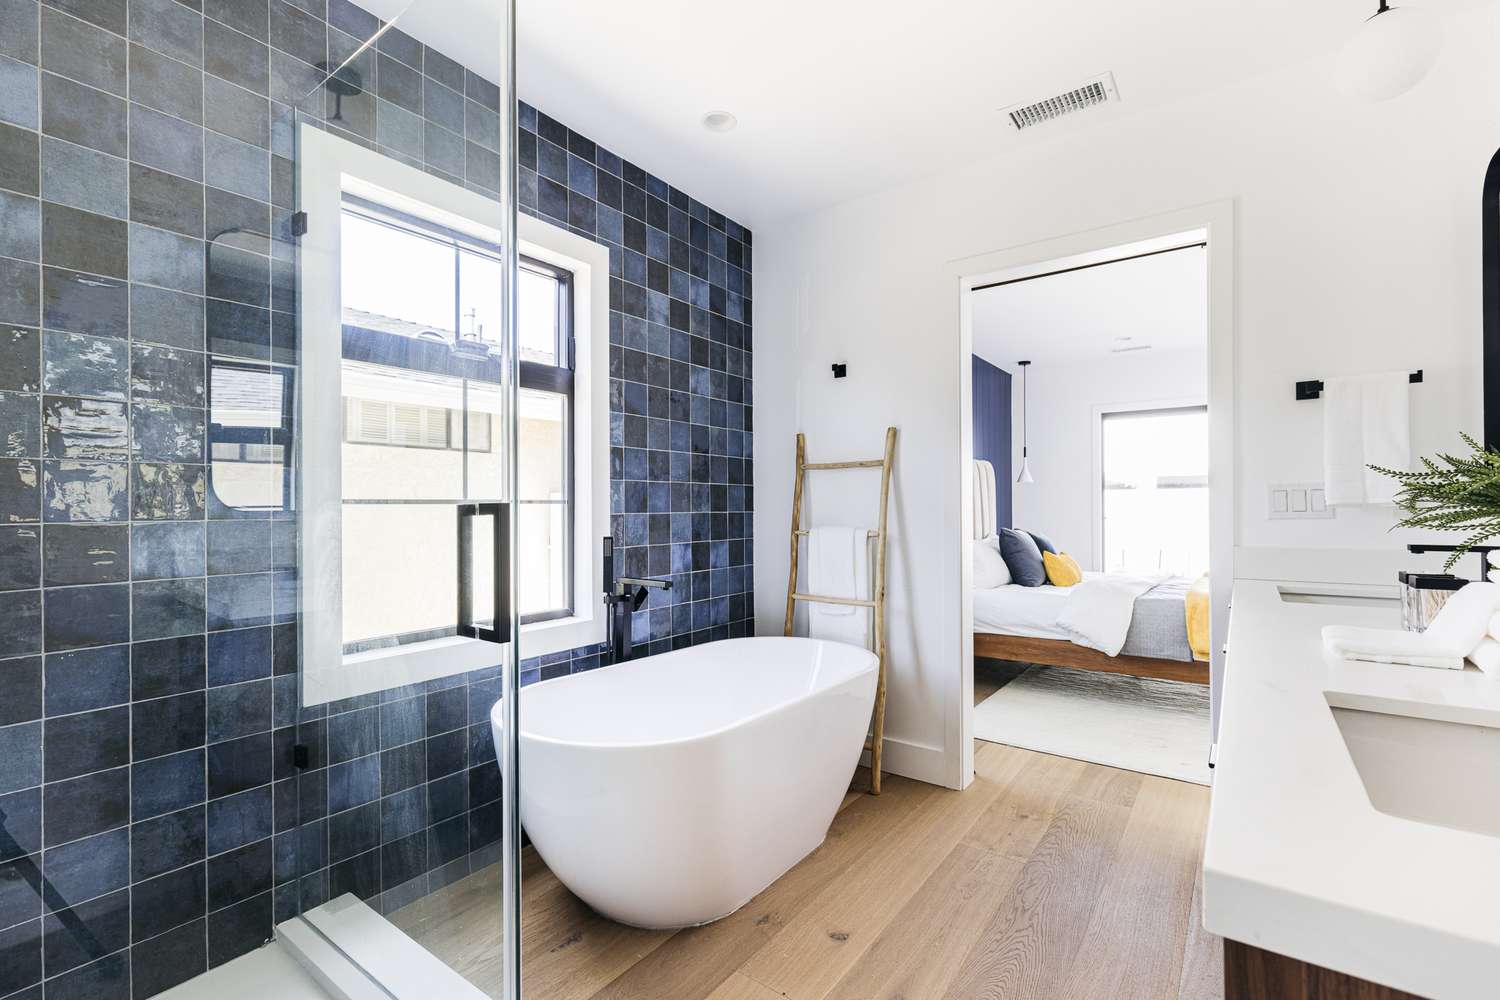 Freistehende Wanne neben blau gefliester Wand in spa-ähnlichem Badezimmer